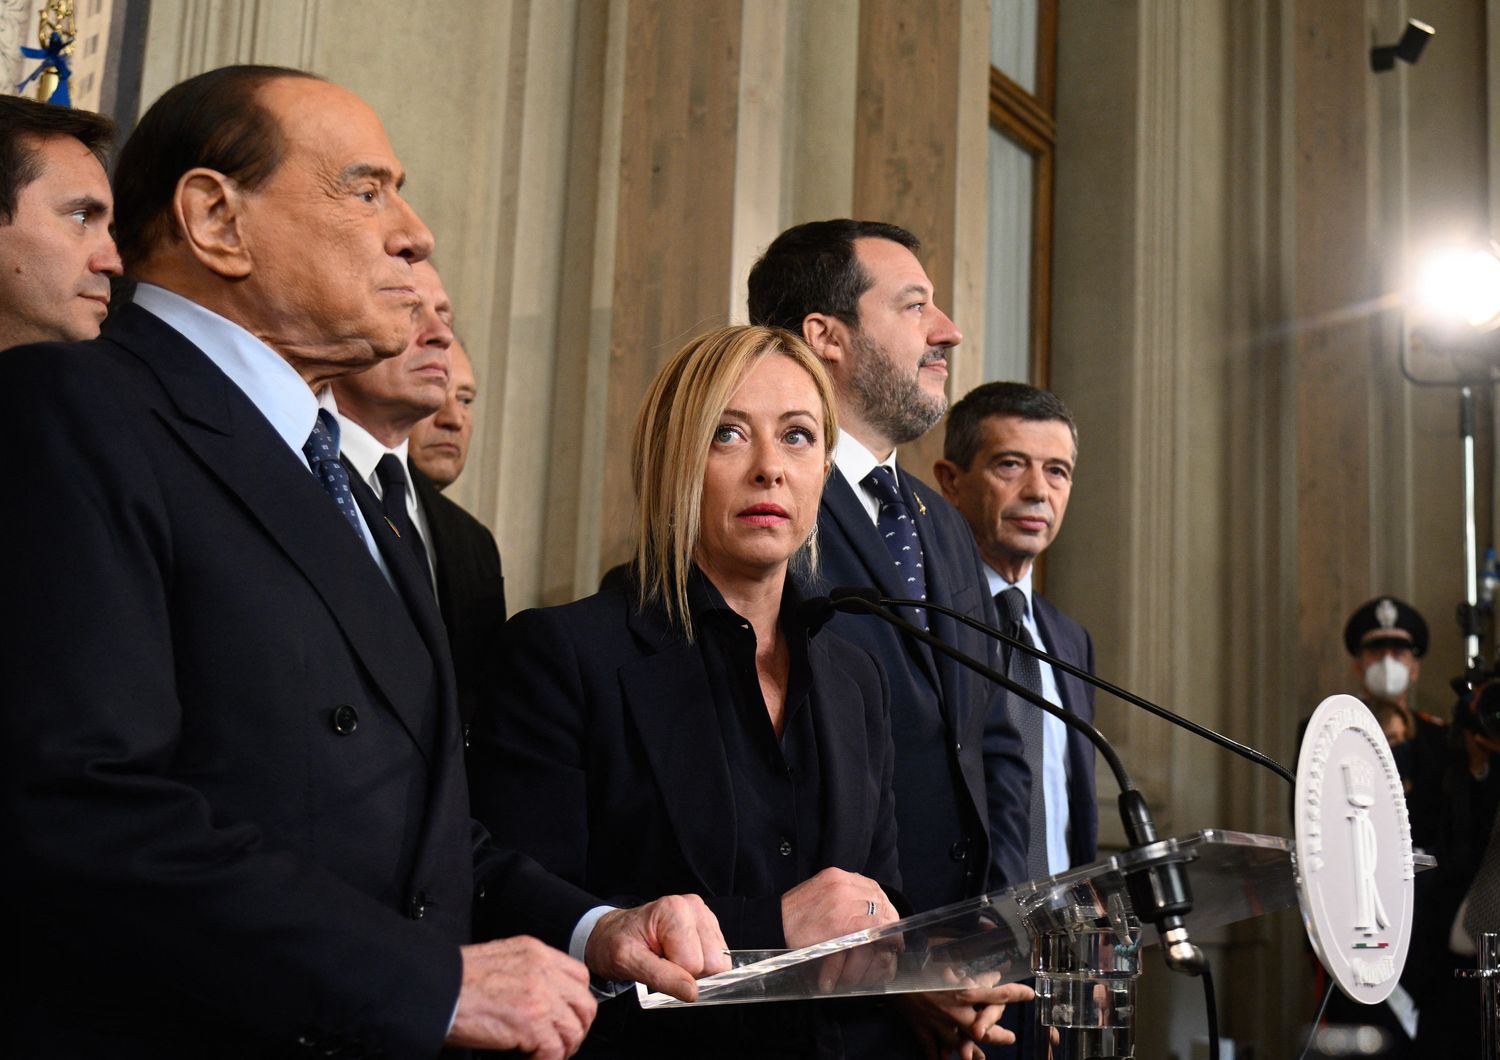 Berlusconi, Meloni, Salvini e Lupi al Quirinale